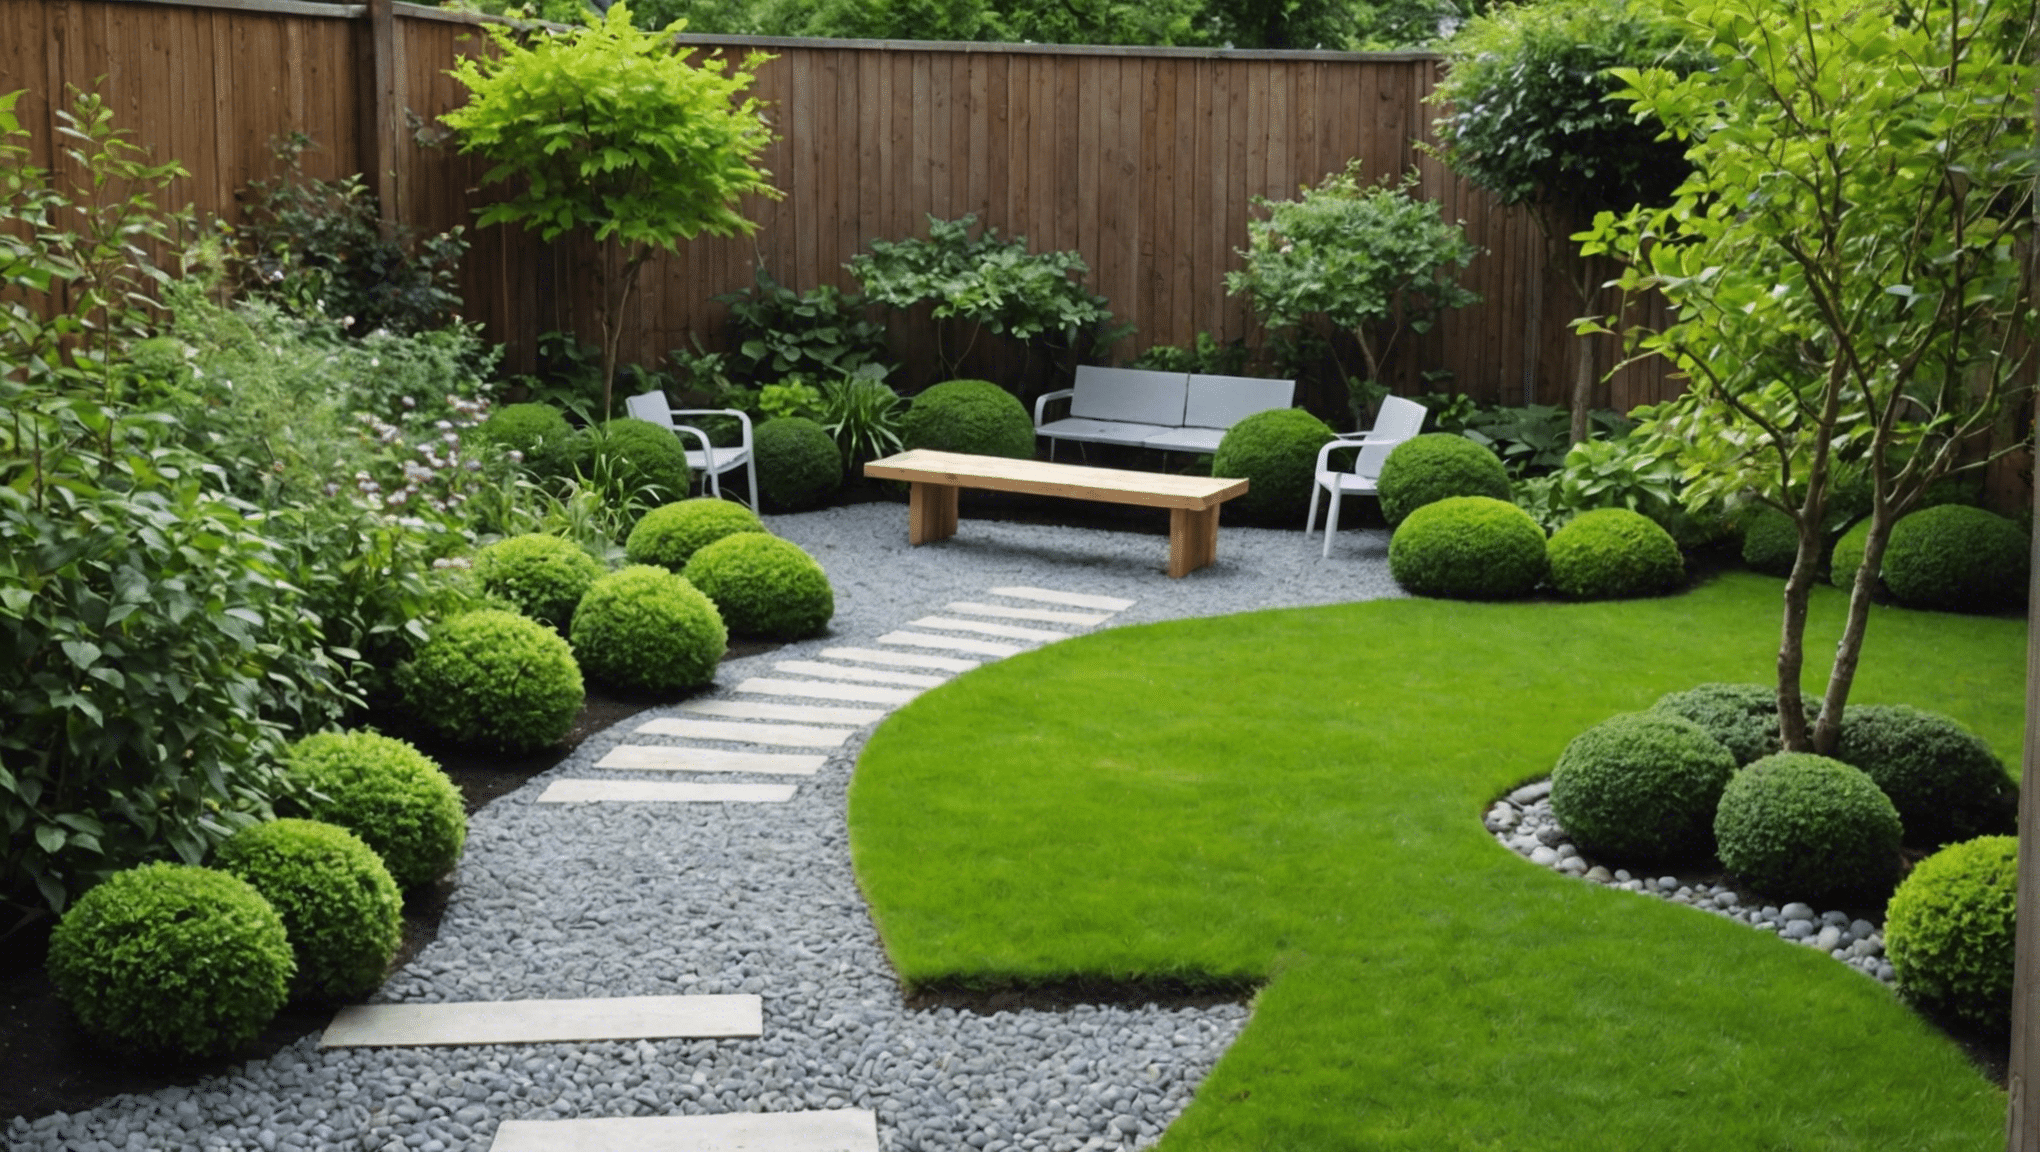 découvrez nos conseils pour créer un petit jardin zen à la maison et profiter d'un espace de tranquillité et de sérénité.